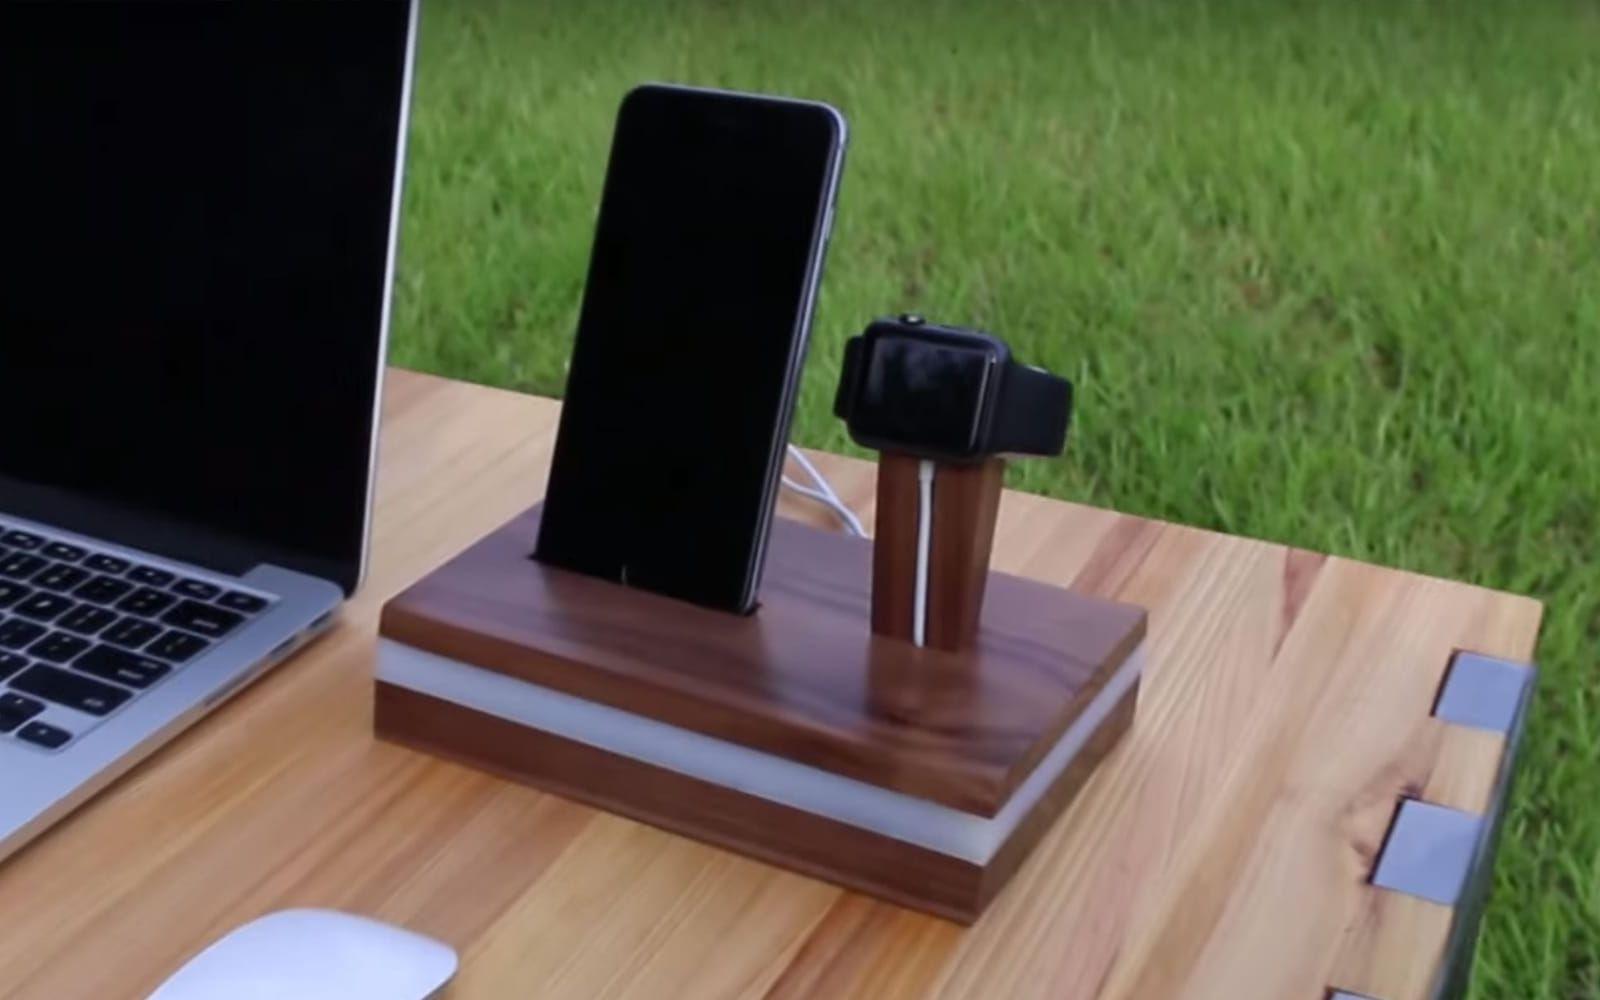 Trä i valnöt och en bit skärbräda i plast verkar räcka för att bygga en snygg laddningsstation för din Iphone och Apple watch. Läs mer: http://bit.ly/2bLrkMF